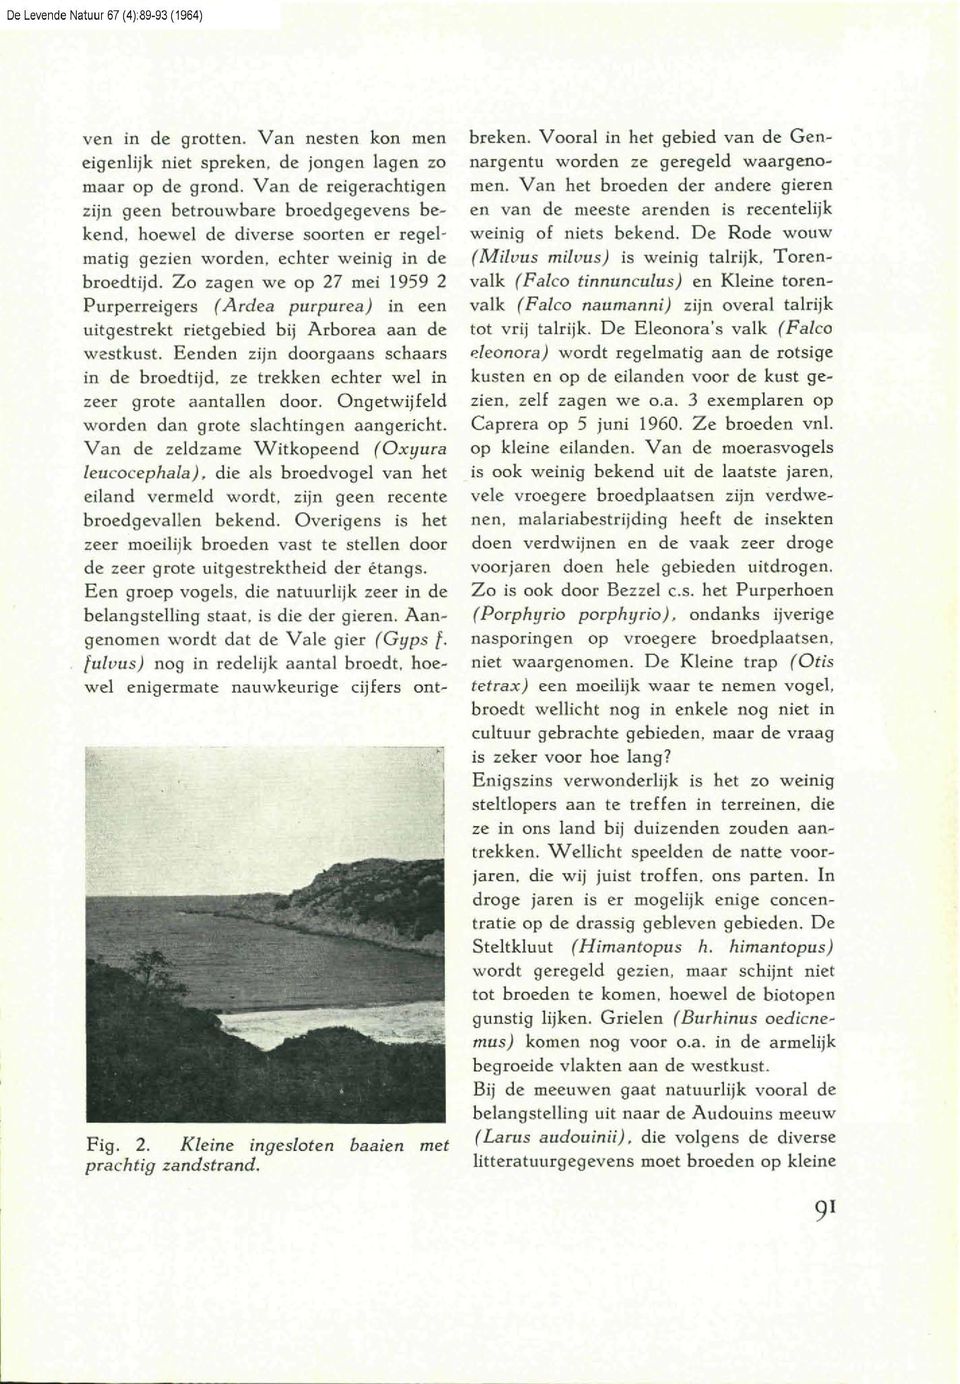 Zo zagen we op 27 mei 1959 2 Purperreigers (Ardea purpurea) in een uitgestrekt rietgebied bij Arborea aan de westkust.